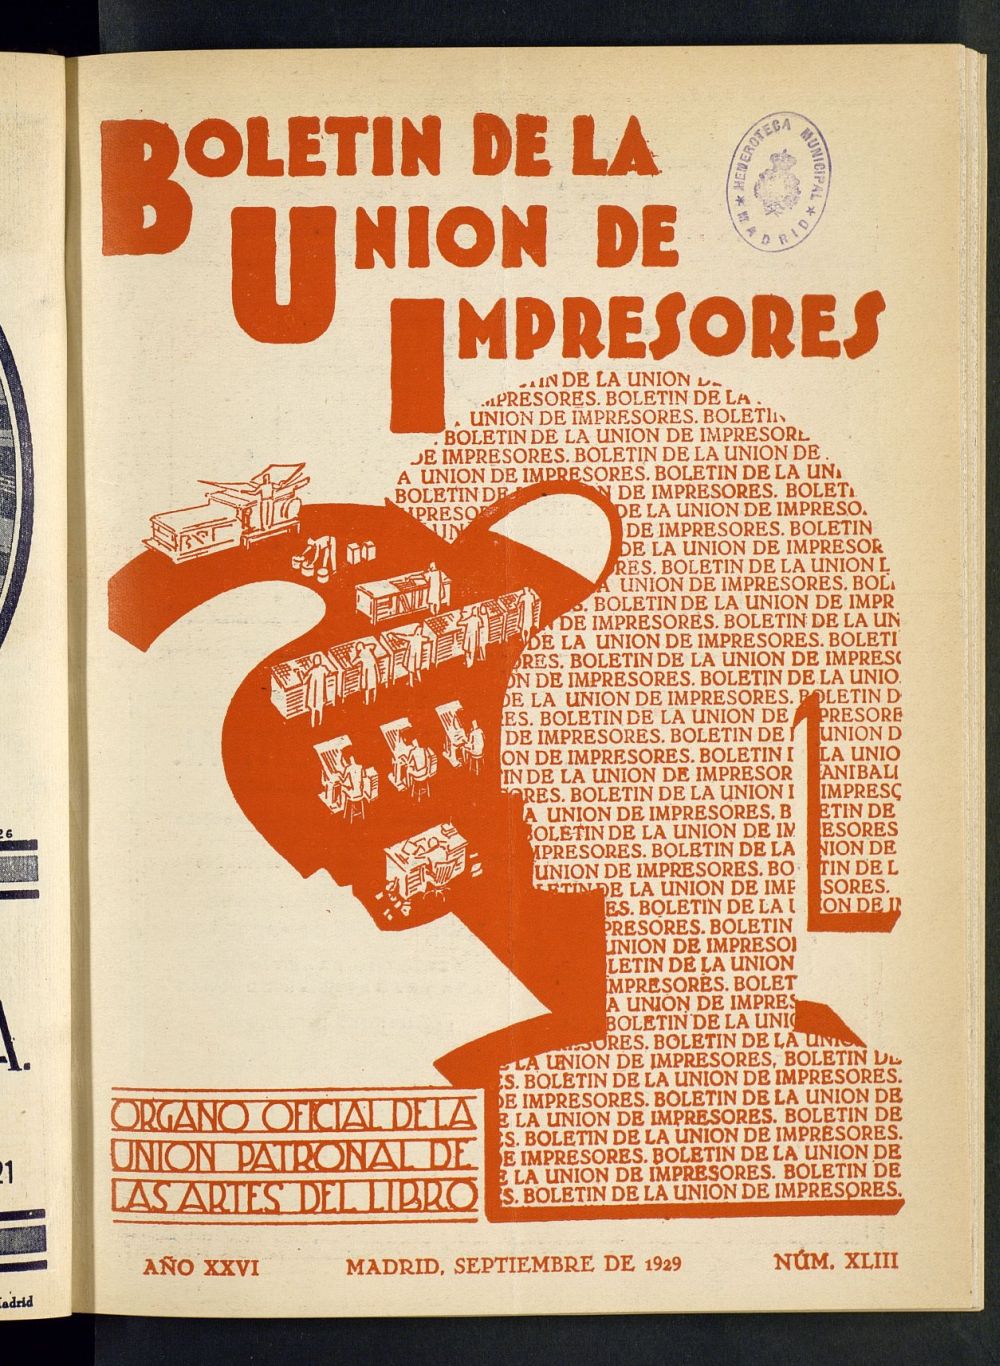 Boletn de la unin de impresores : rgano de la unin patronal de las artes del libro de septiembre de 1929